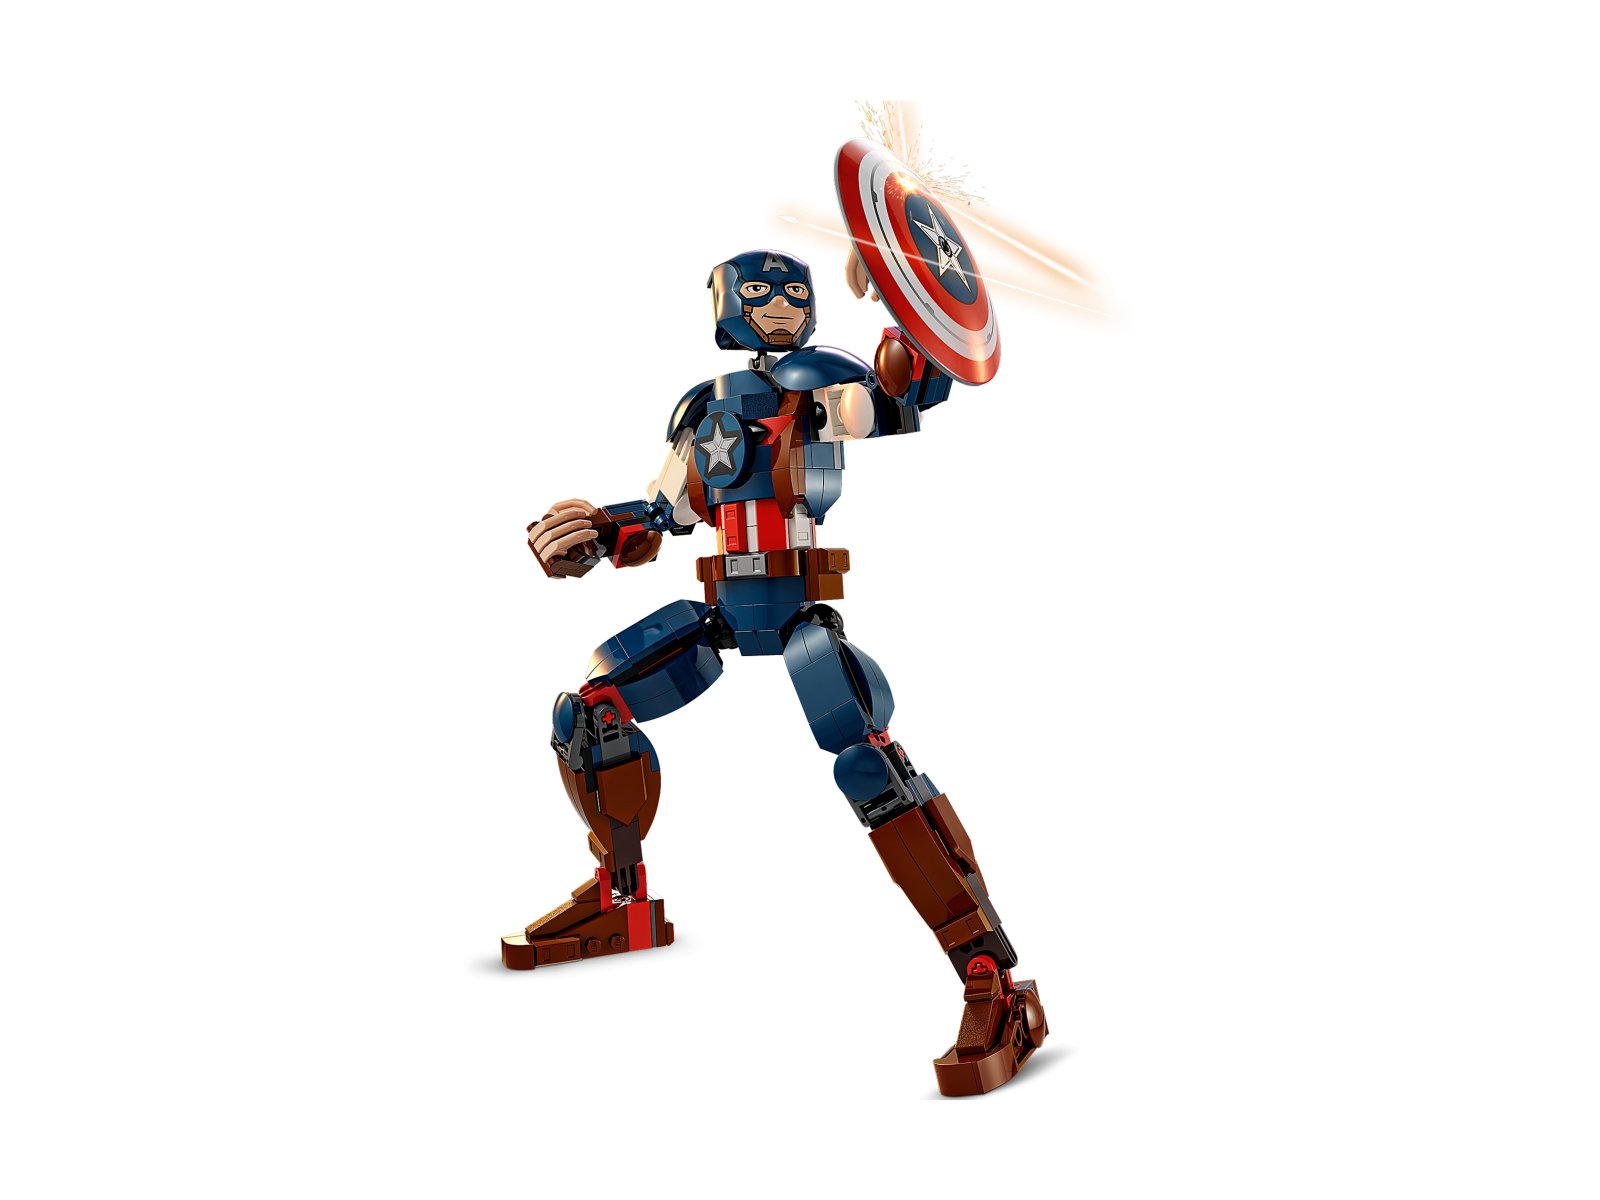 LEGO Marvel Figurka Kapitana Ameryki do zbudowania 76258